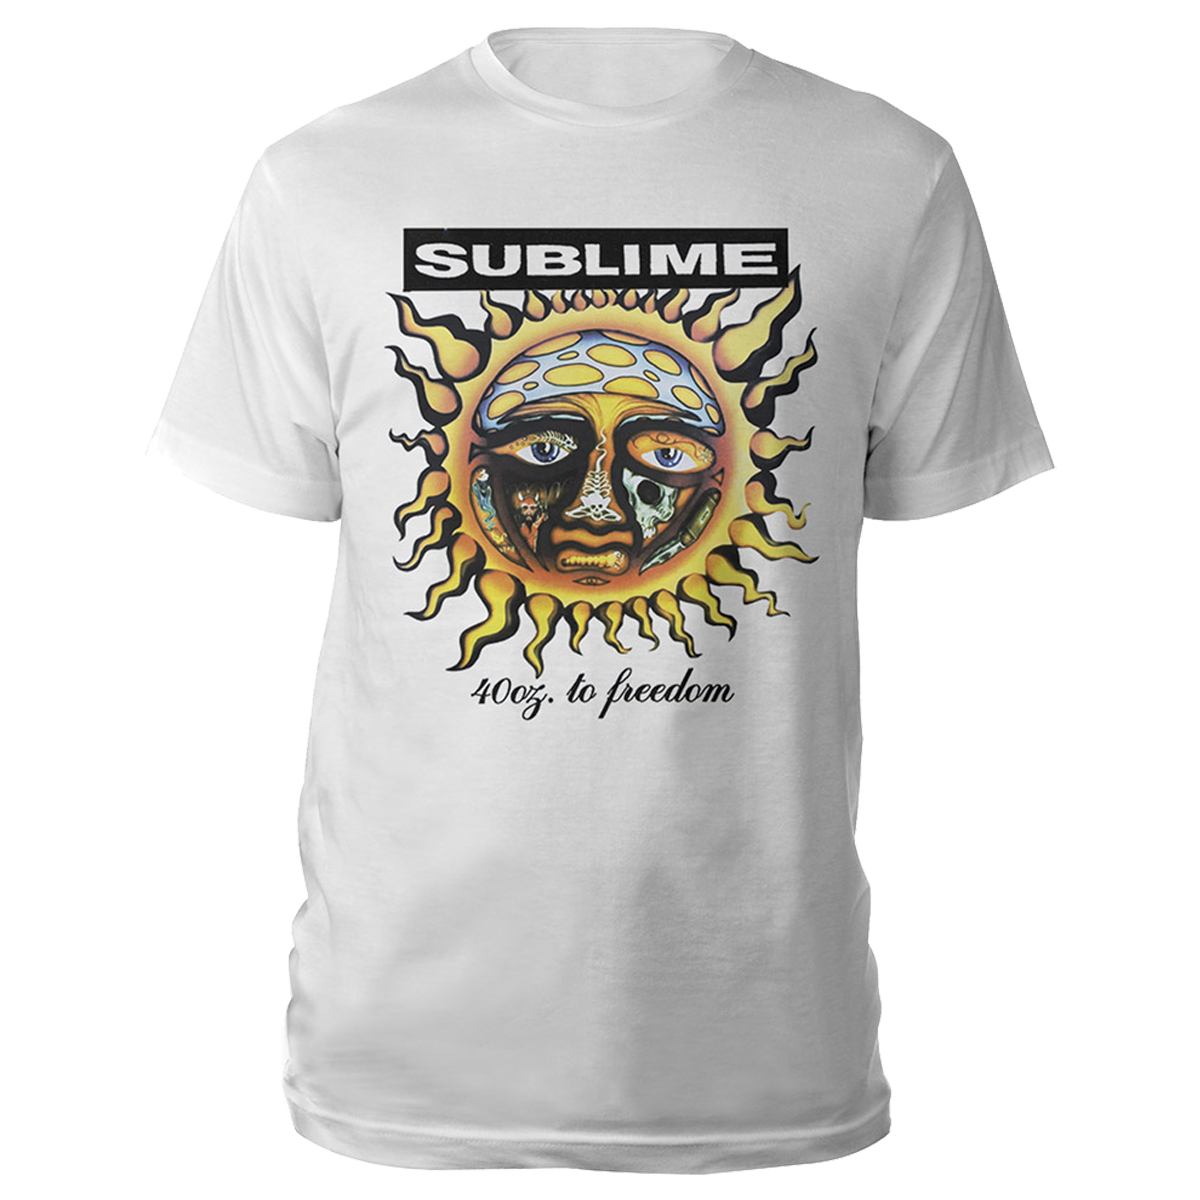 Sublime 40 Oz To Freedom 30Th Anniversary Sweatshirt Band T-Shirt